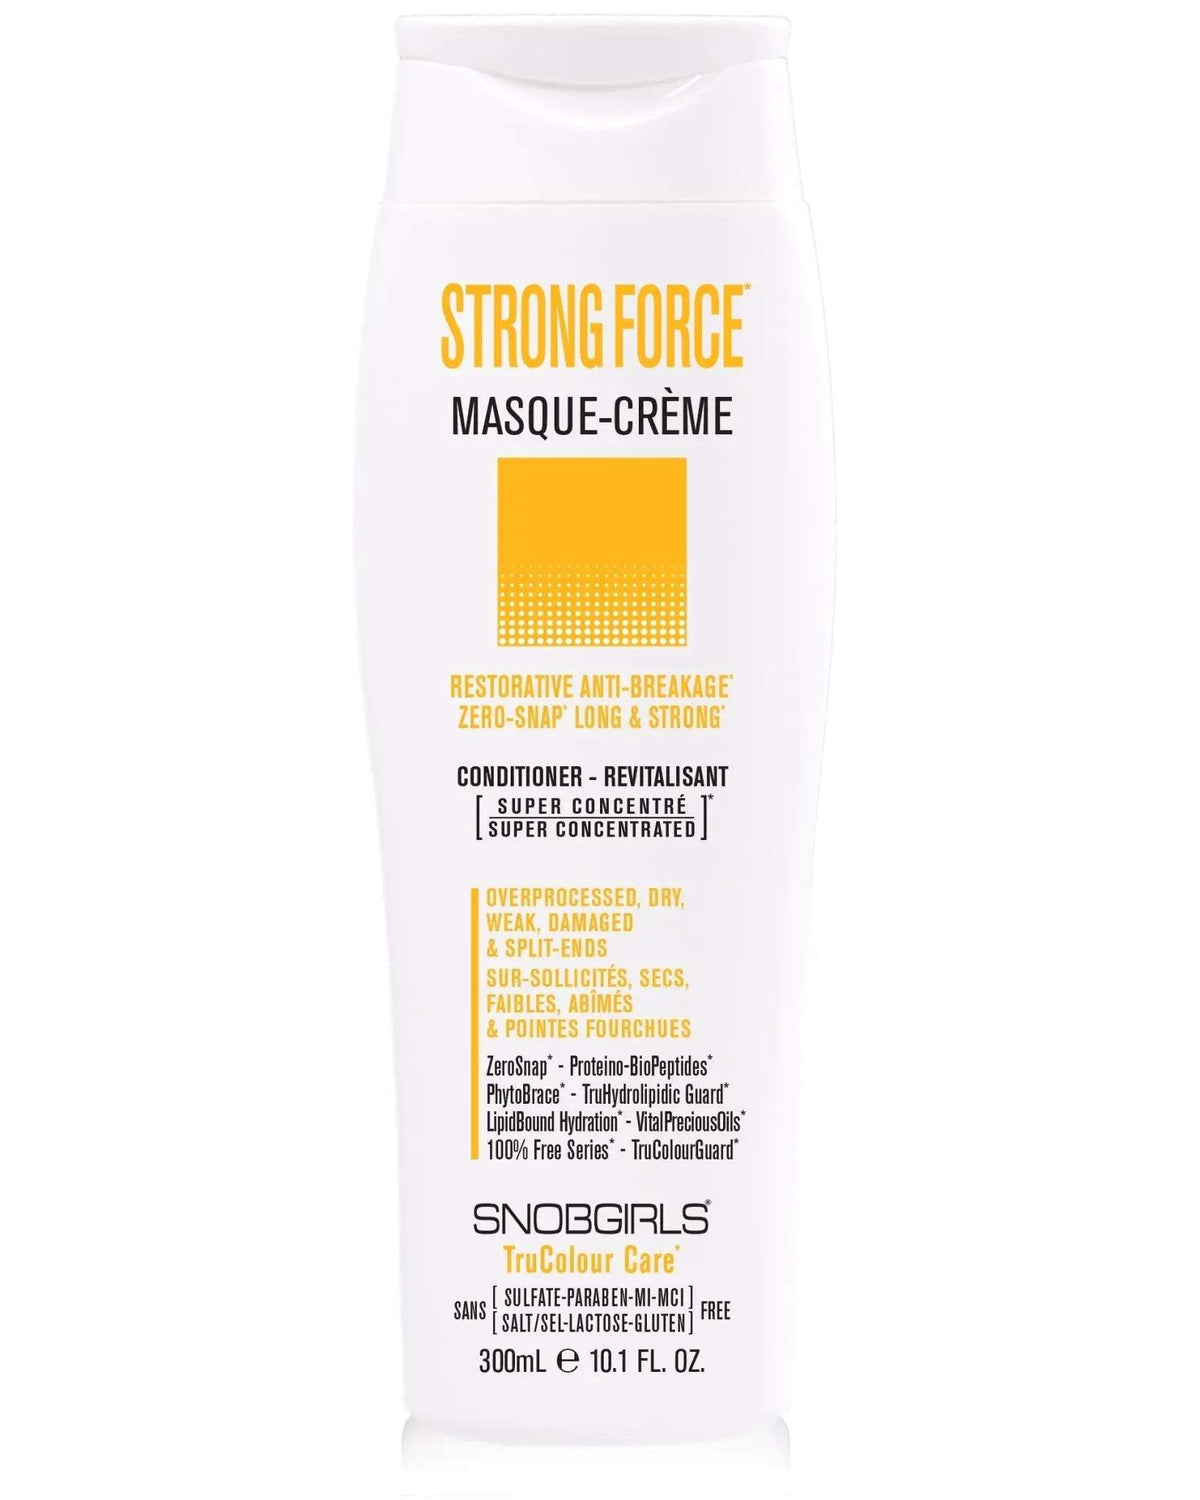 STRONGFORCE Masque-Creme (conditioner) 10.1 FL. OZ. - SNOBGIRLS.com